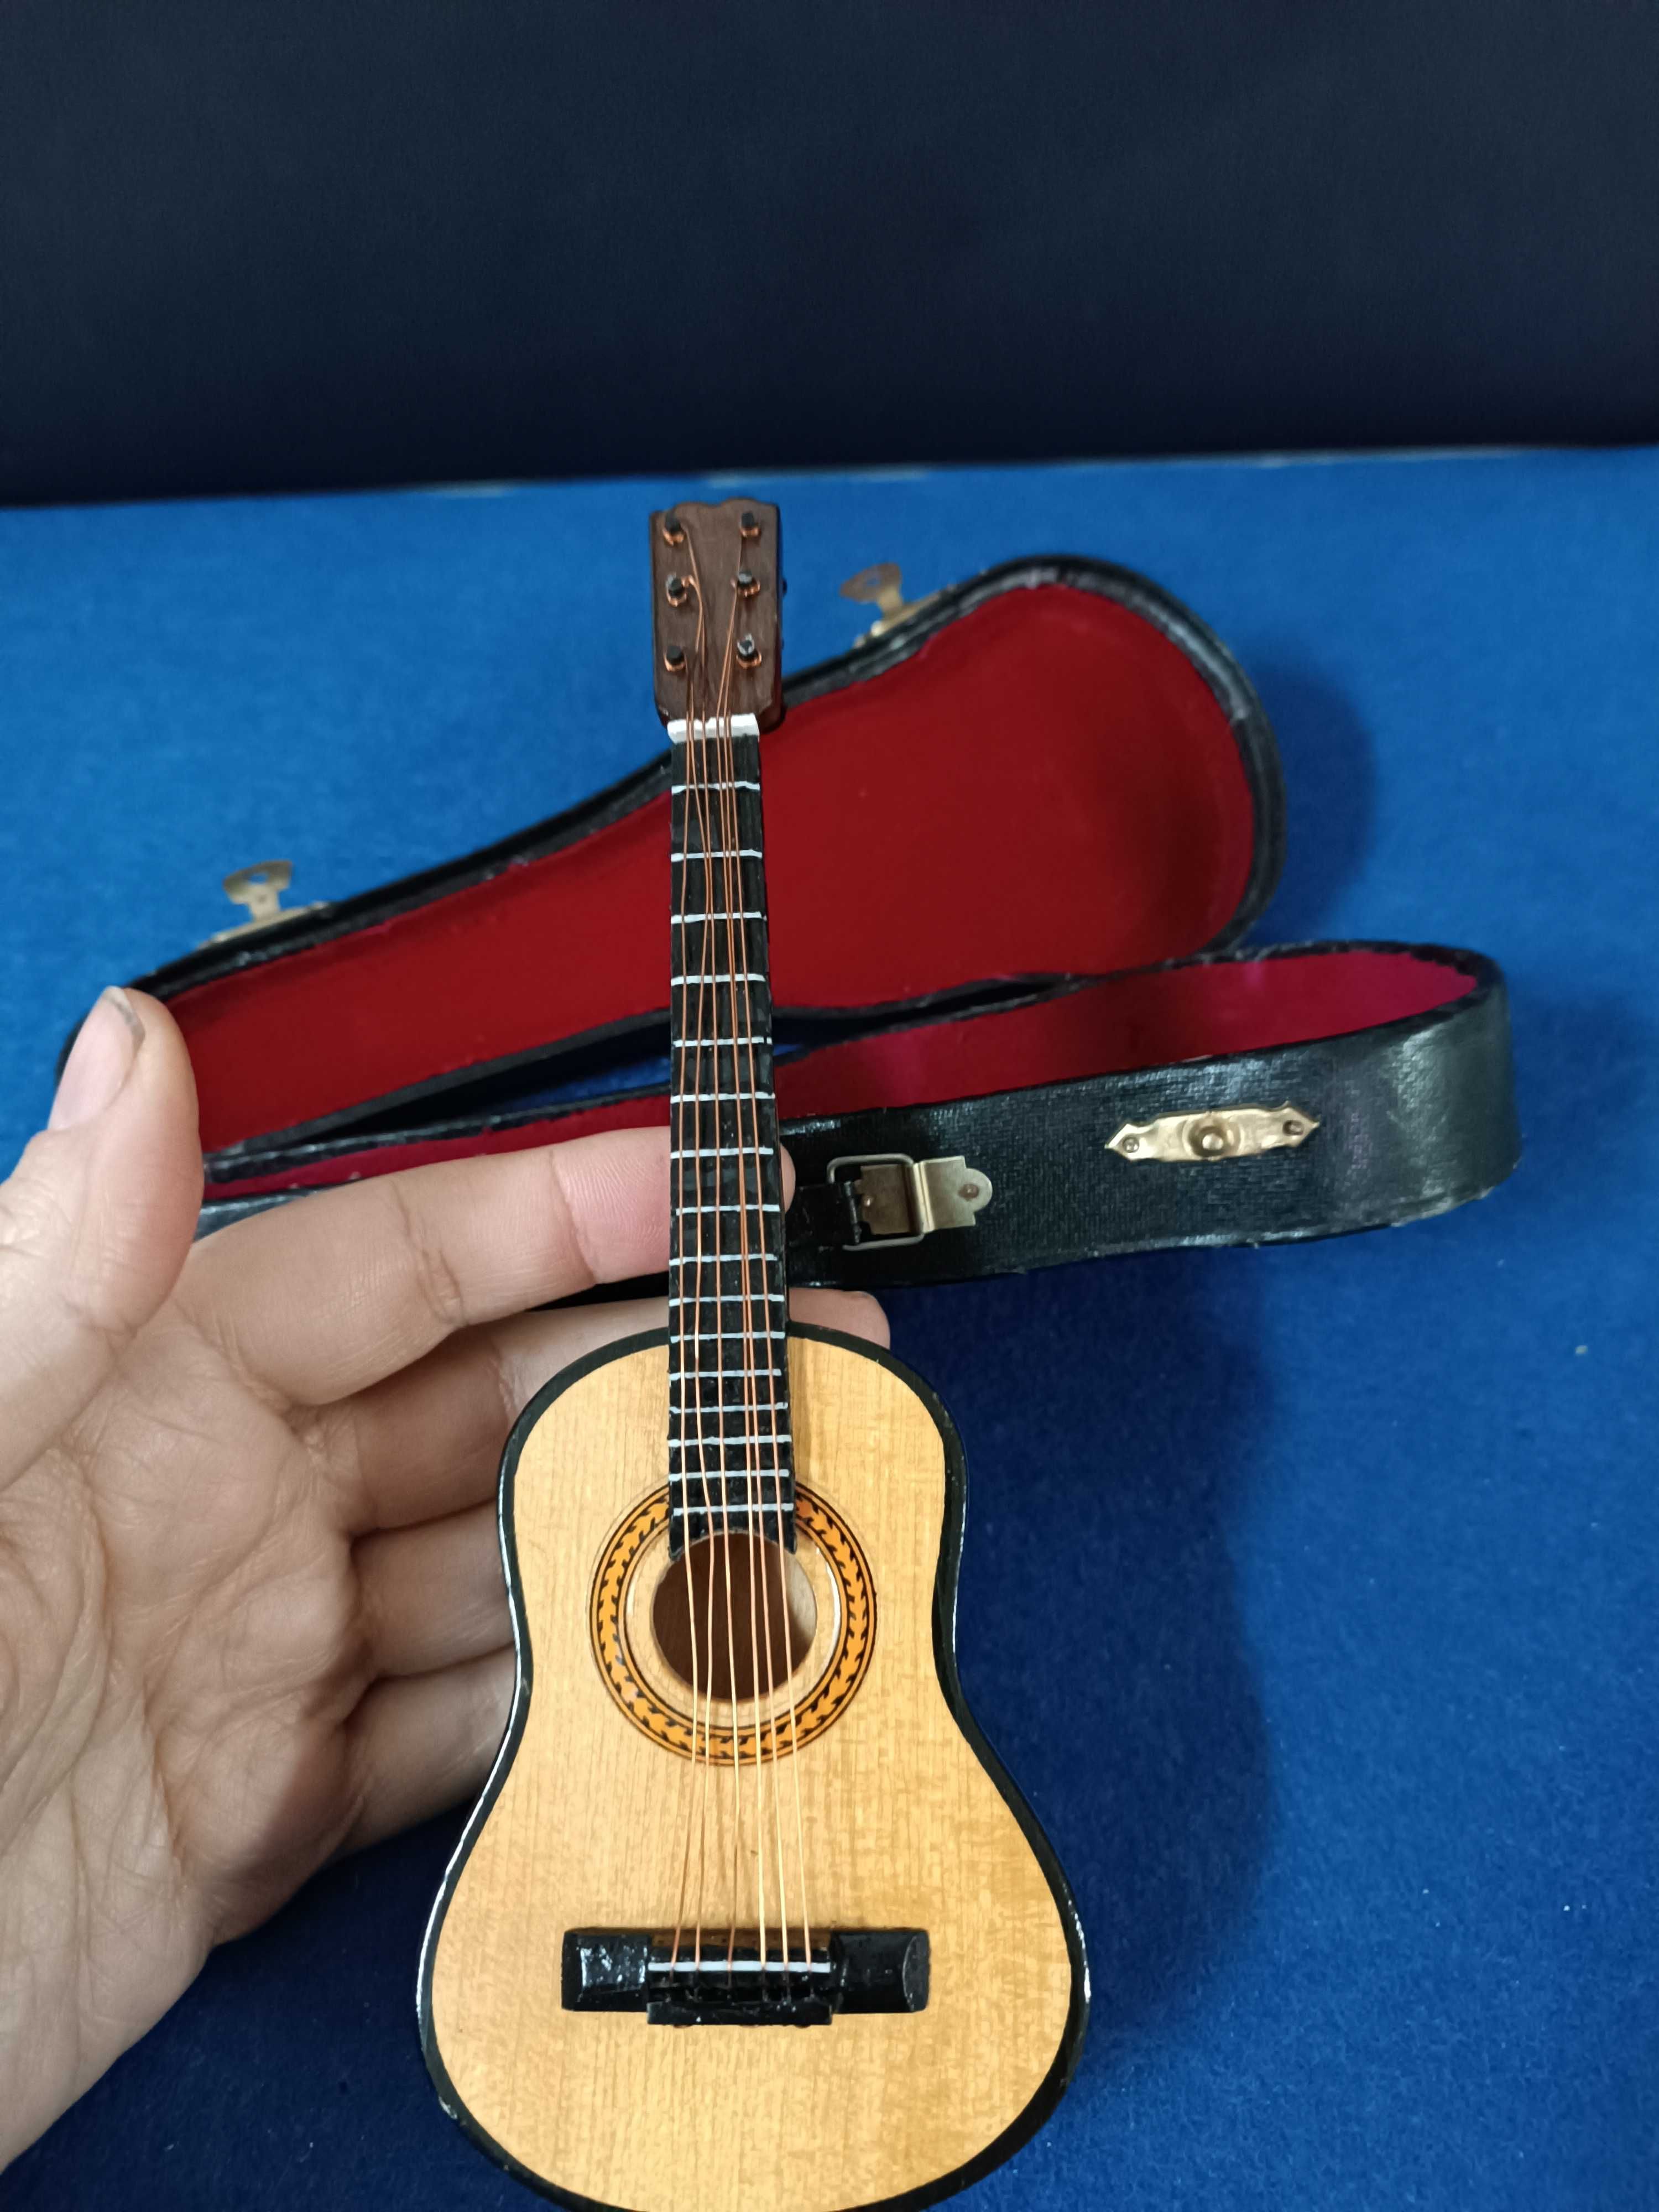 Miniatura de Guitarra Classica em madeira no estojo original.